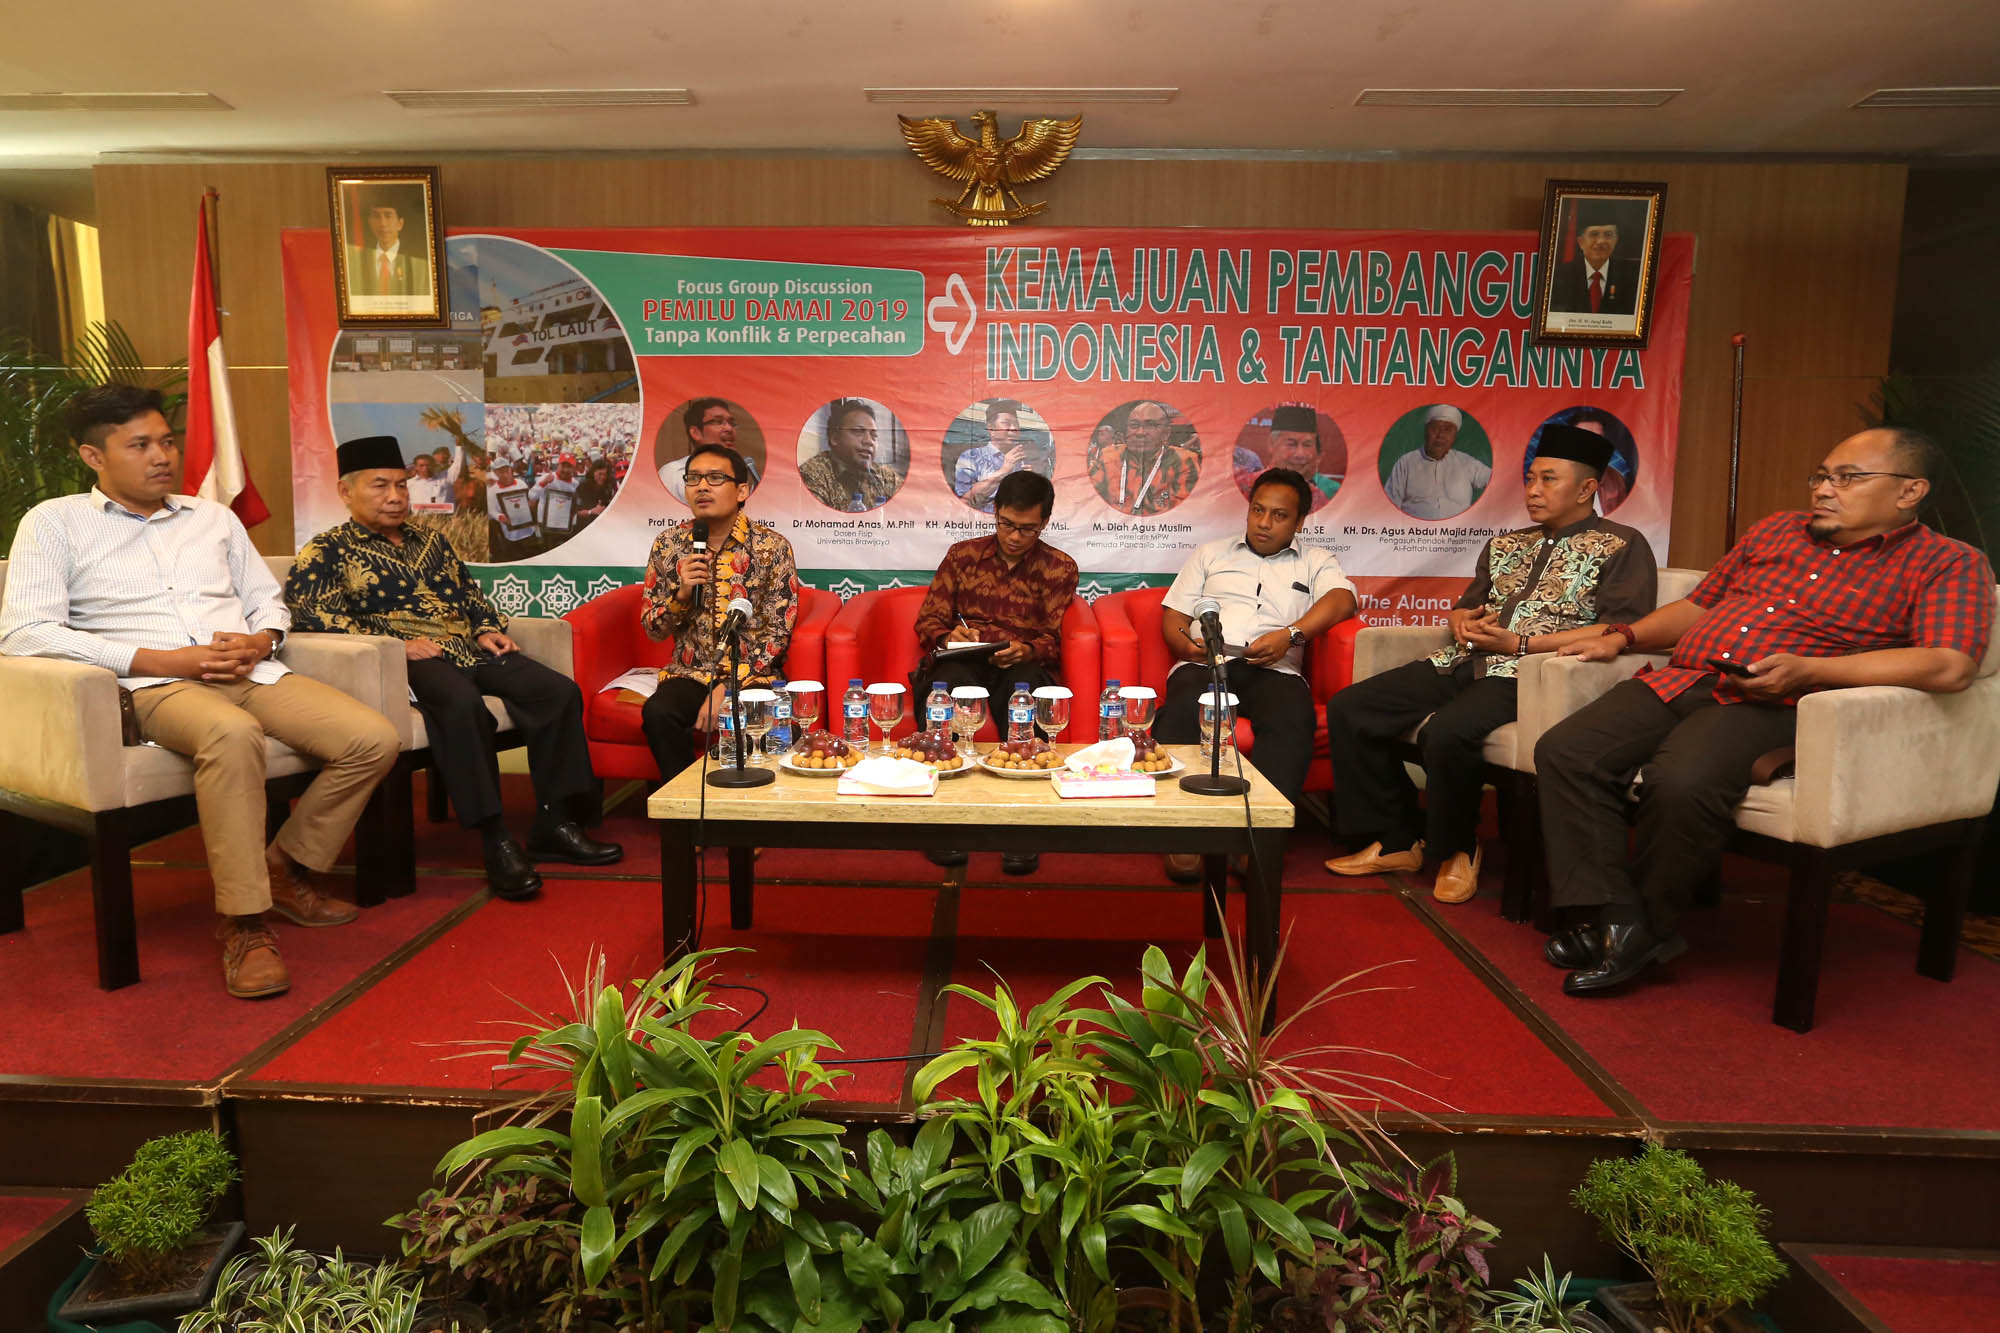 FGD dan seminar "Kemajuan Pembangunan dan Tantangannya" di Hotel Alana Surabaya. (Foto: riadi/ngopibareng.id)